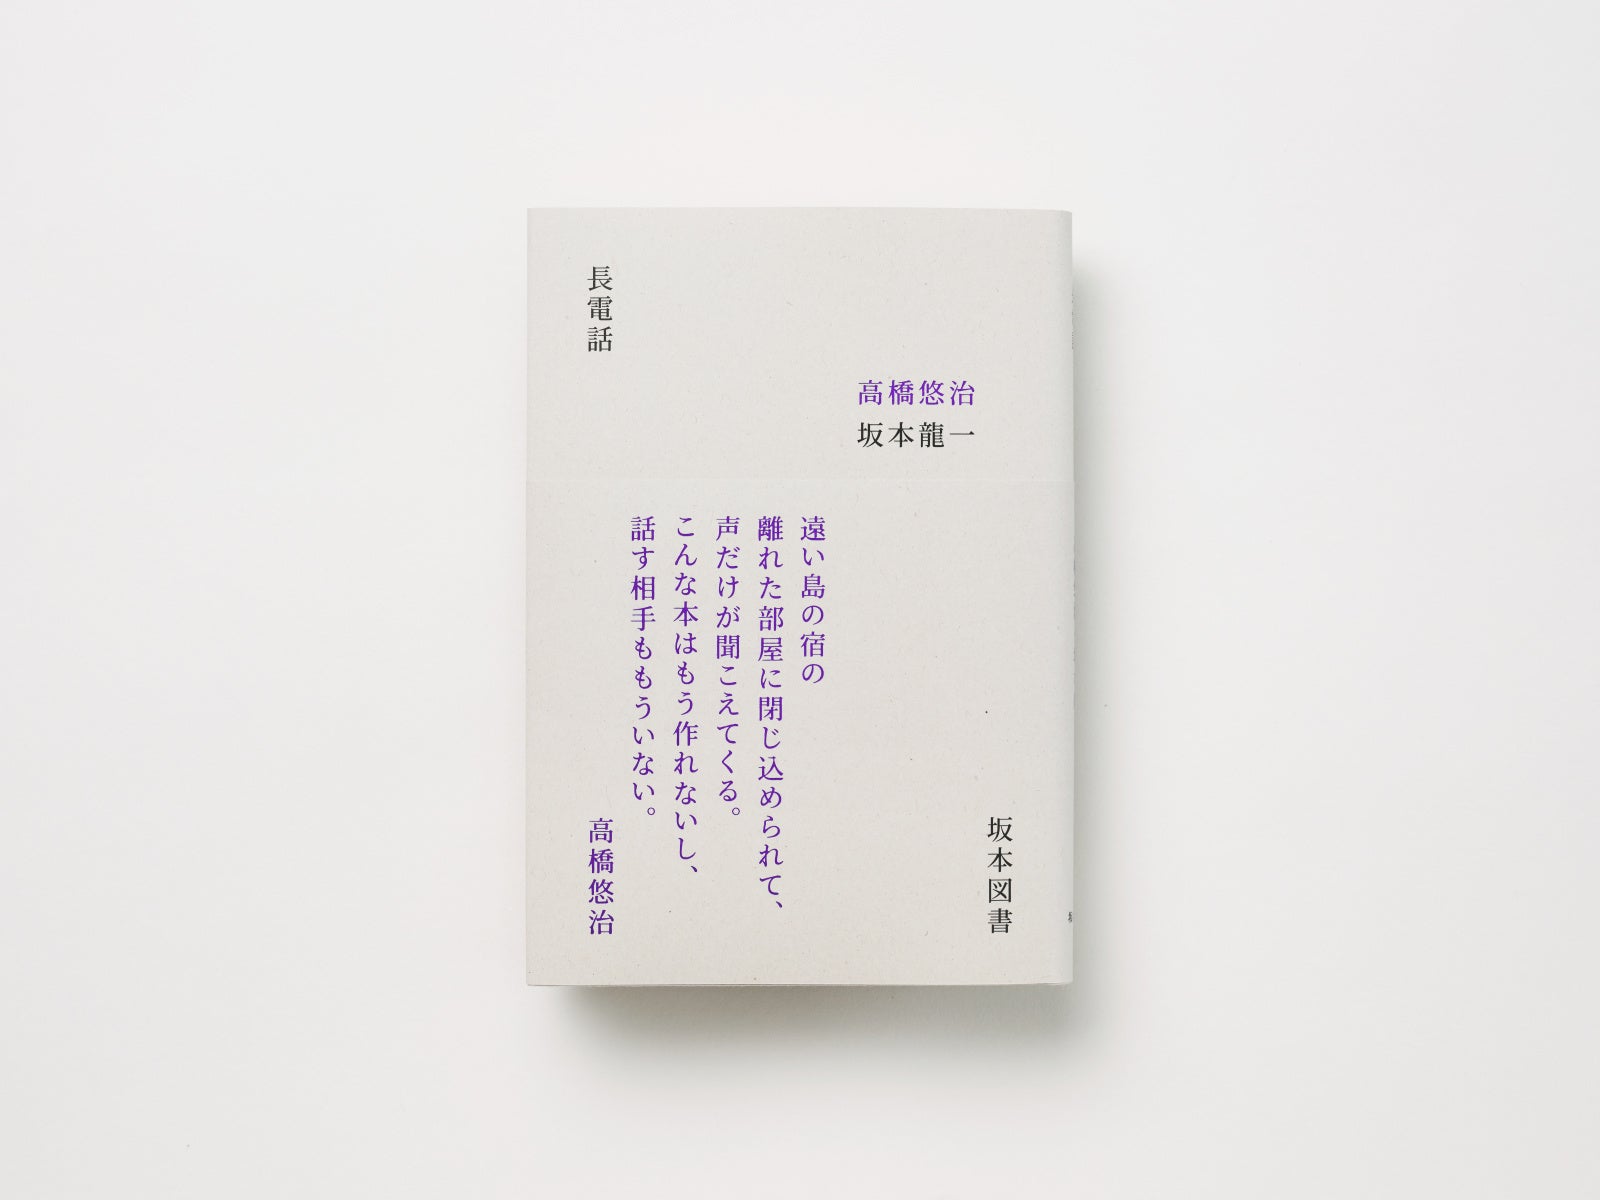 坂本図書より第二弾となる書籍の発売が決定！高橋悠治と坂本龍一による対談本『長電話』を復刊。